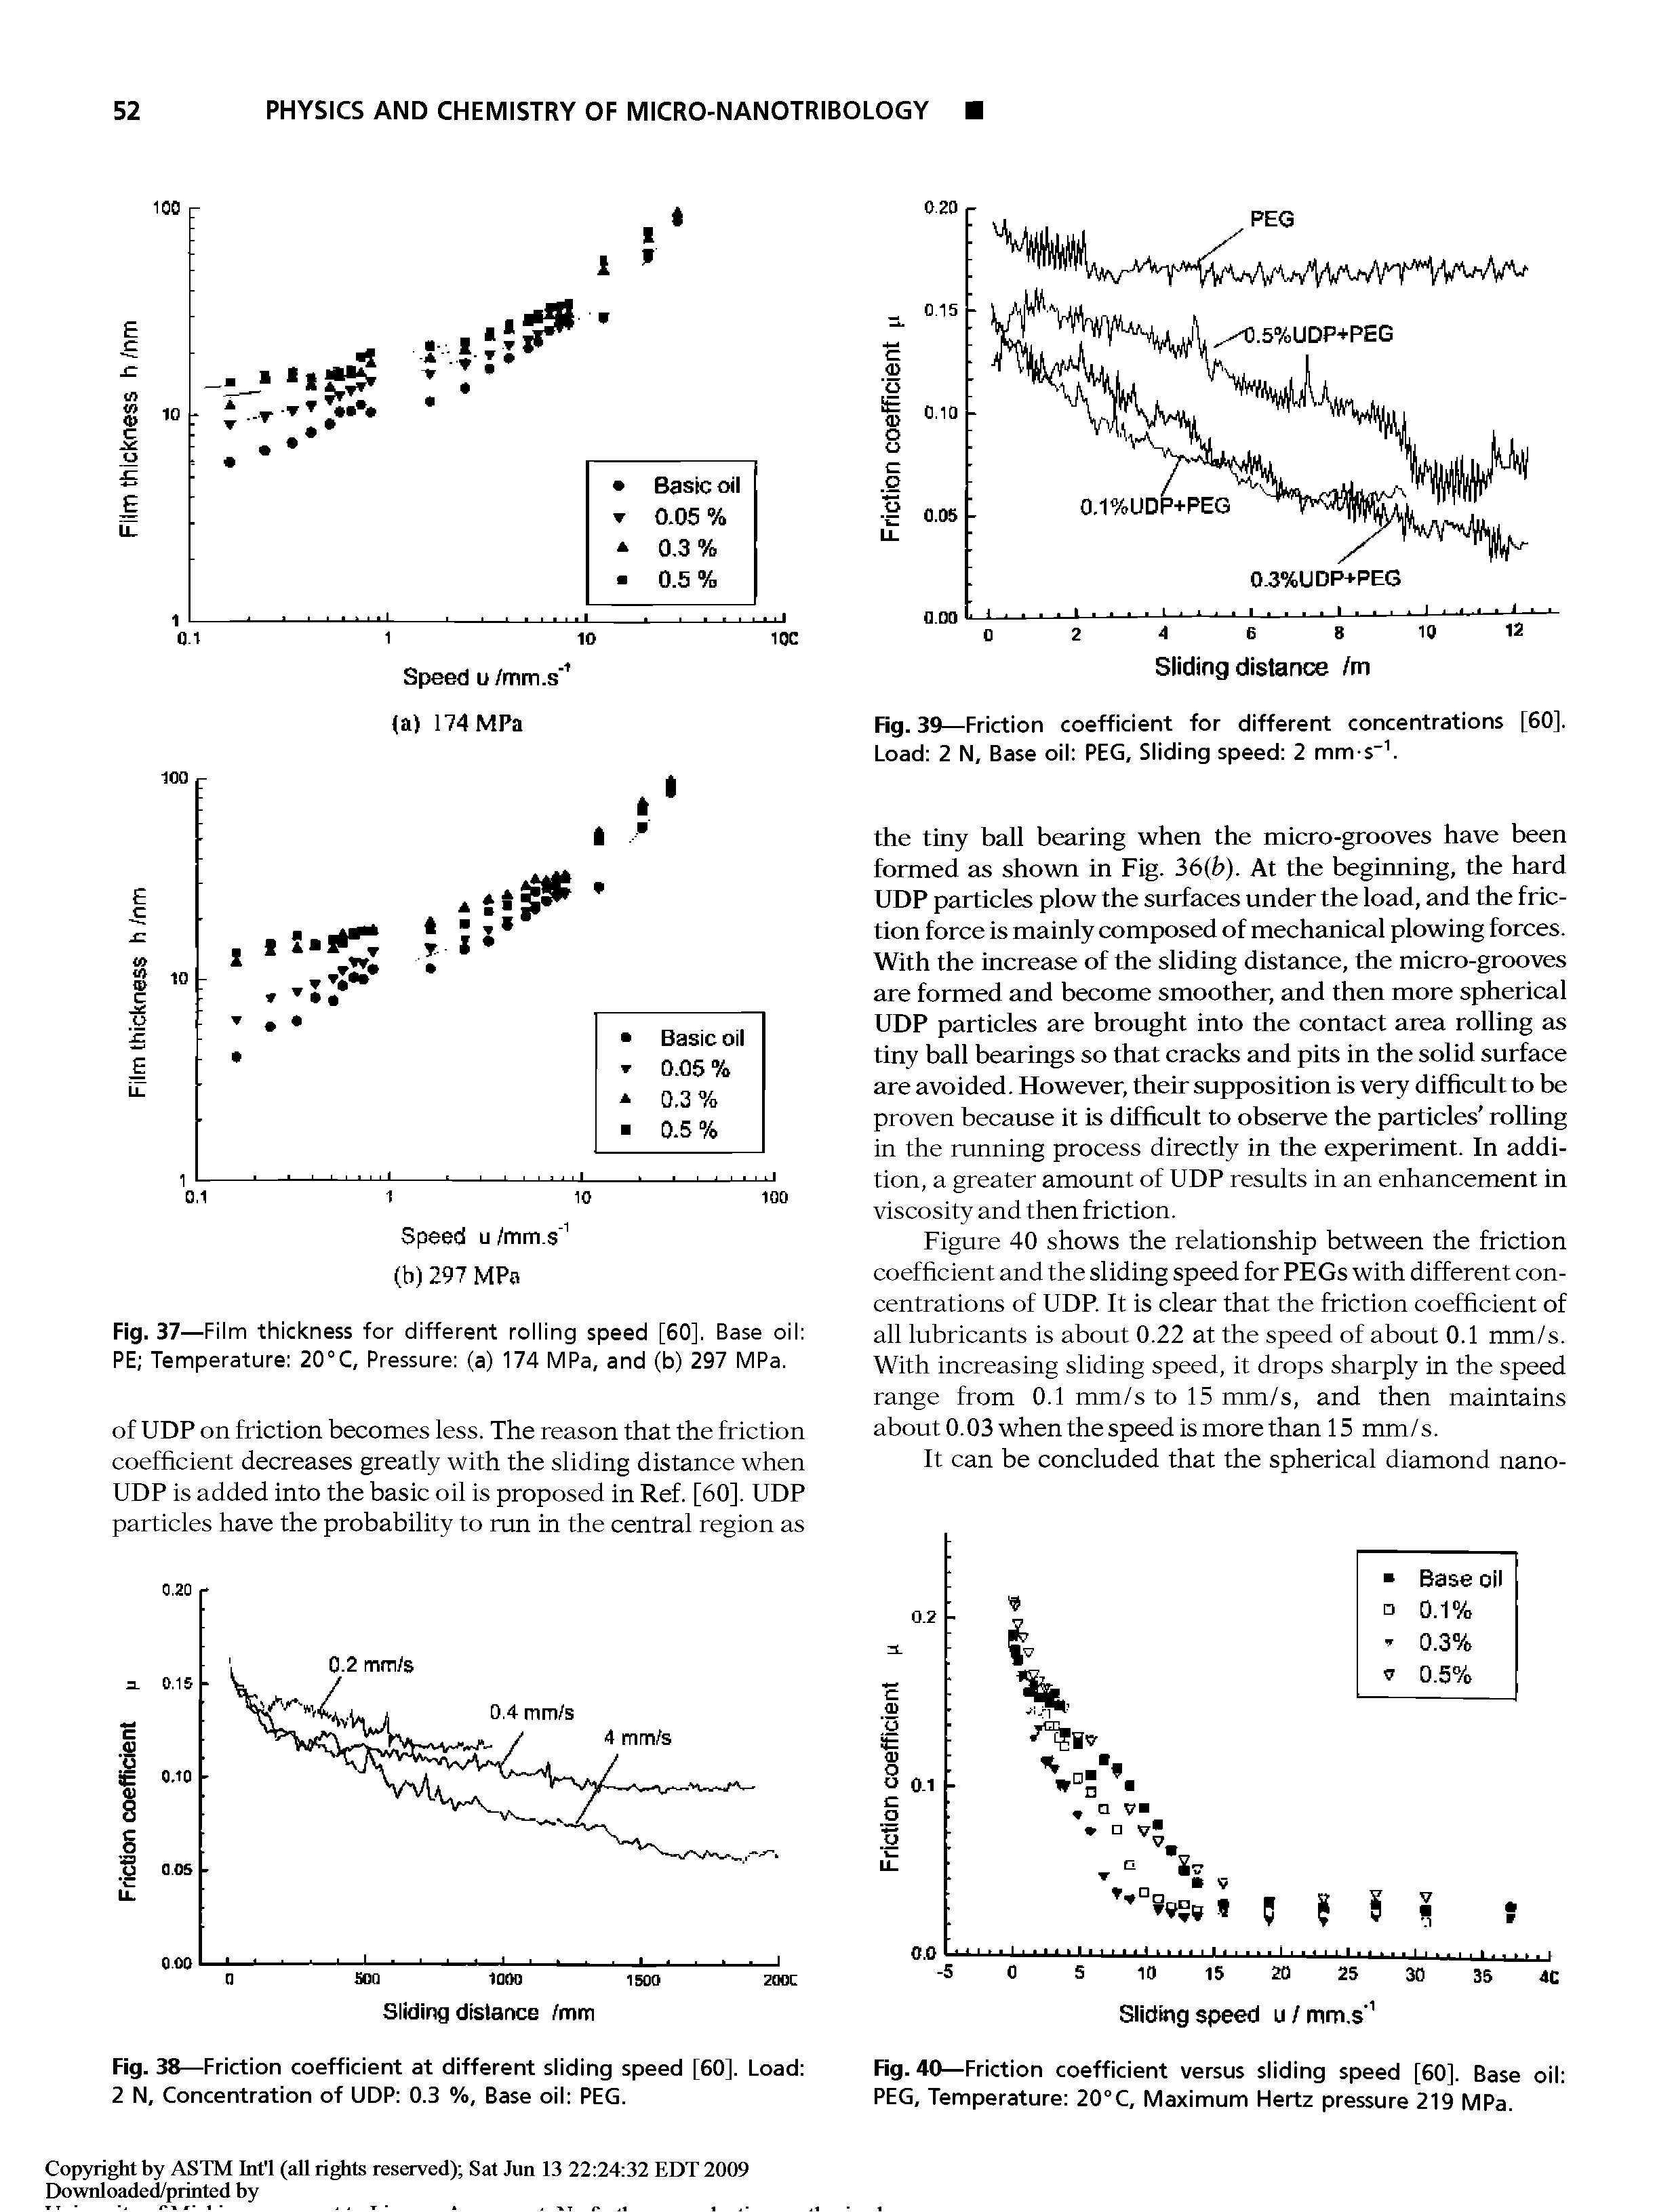 Fig. 40—Friction coefficient versus sliding speed [60]. Base oil PEG, Temperature 20°C, Maximum Hertz pressure 219 MPa.